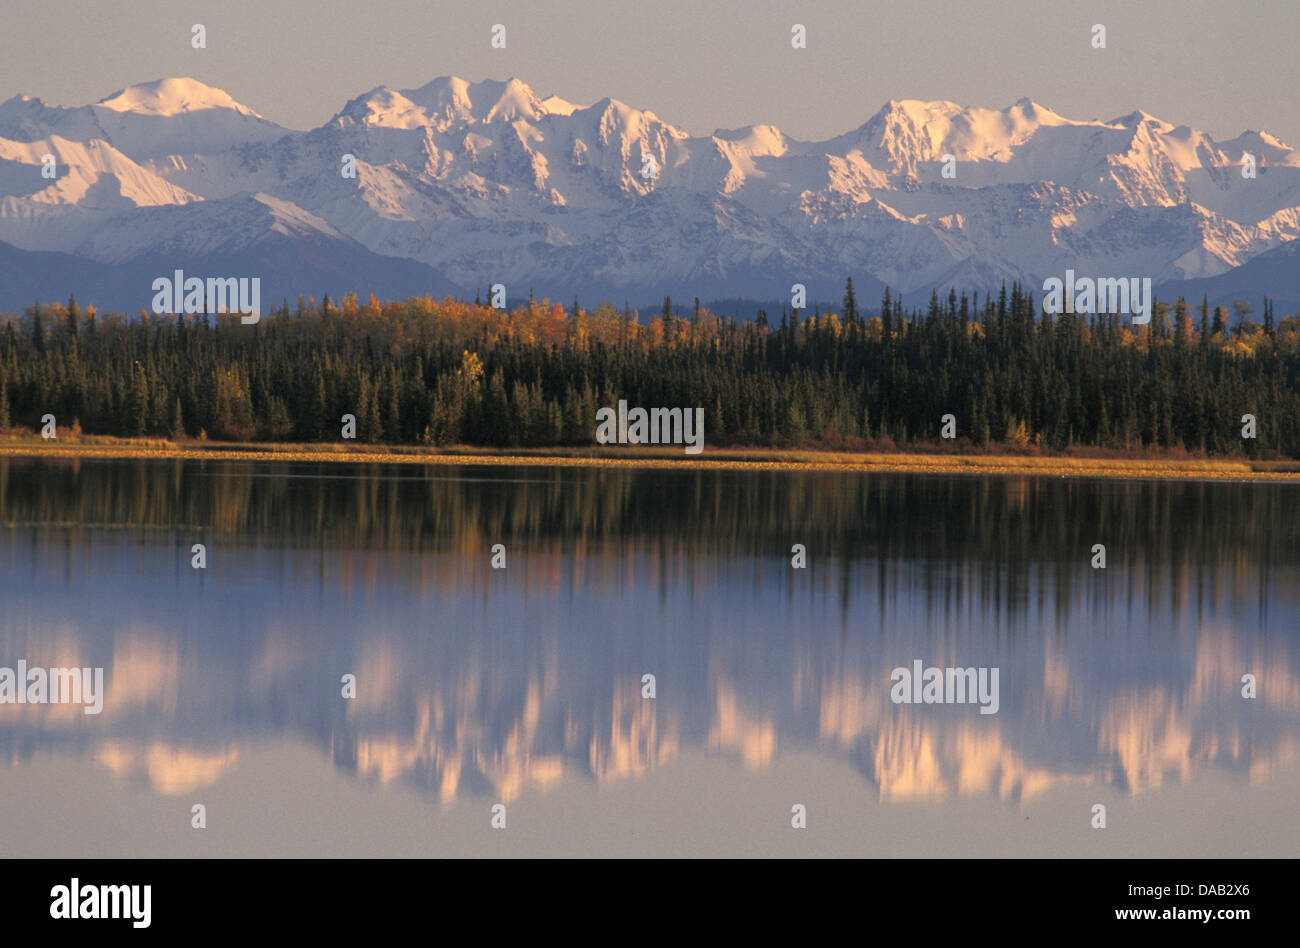 Wrangell, Mountains, Deadman Lake, Alaska, USA, reflection, low sun, mountain, lake, lush forest, autumn, colors Stock Photo